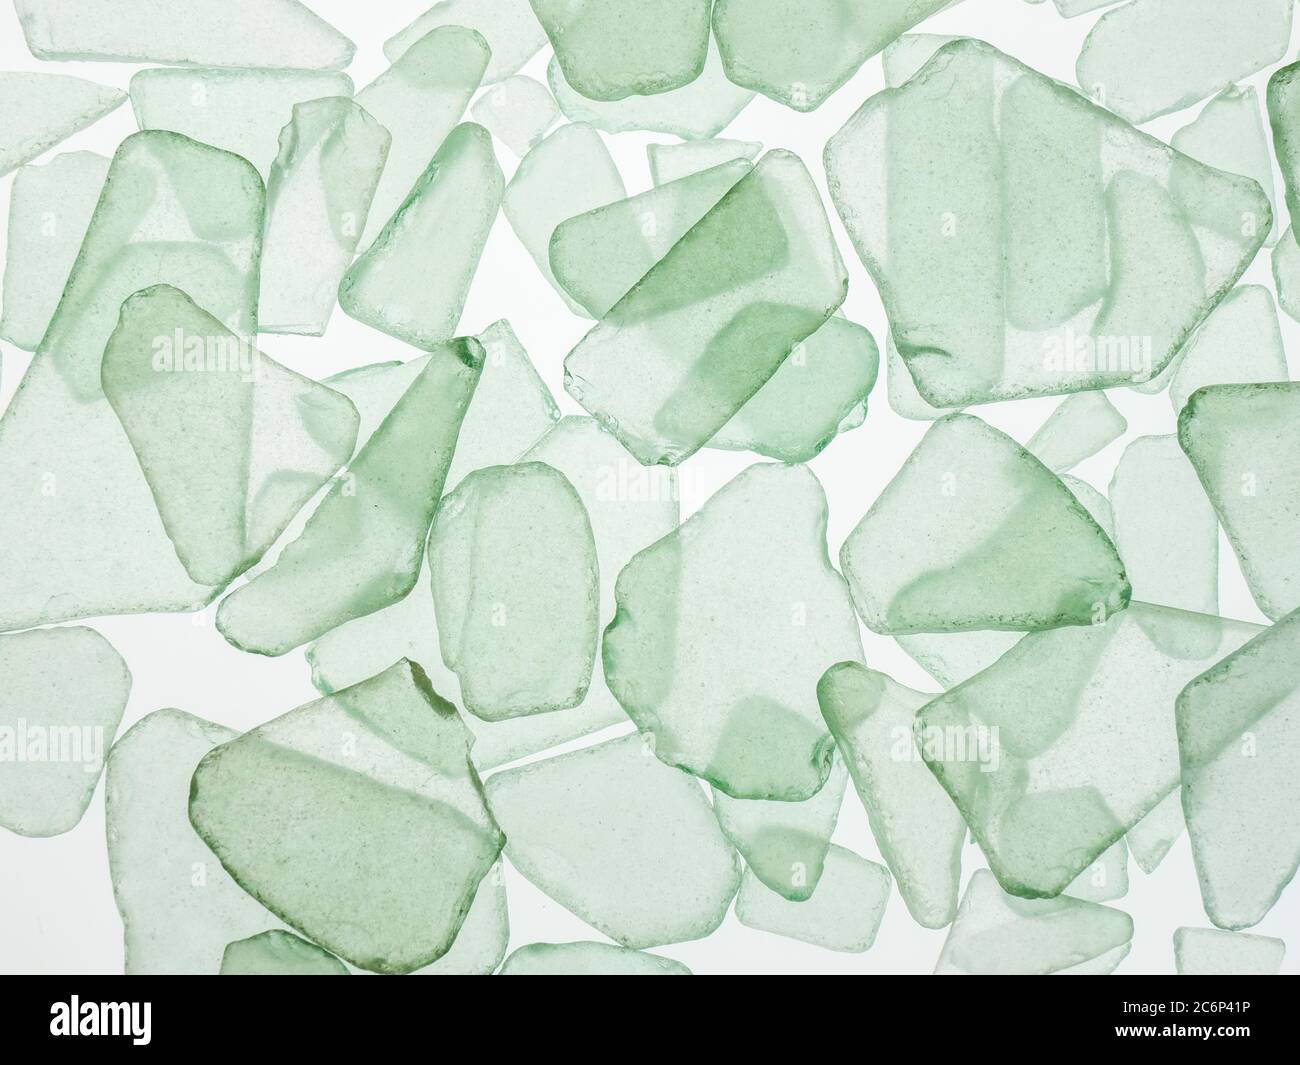 Primo piano di riempimento di verde chiaro traslucido o scaglie di vetro di acqua marina su sfondo bianco Foto Stock